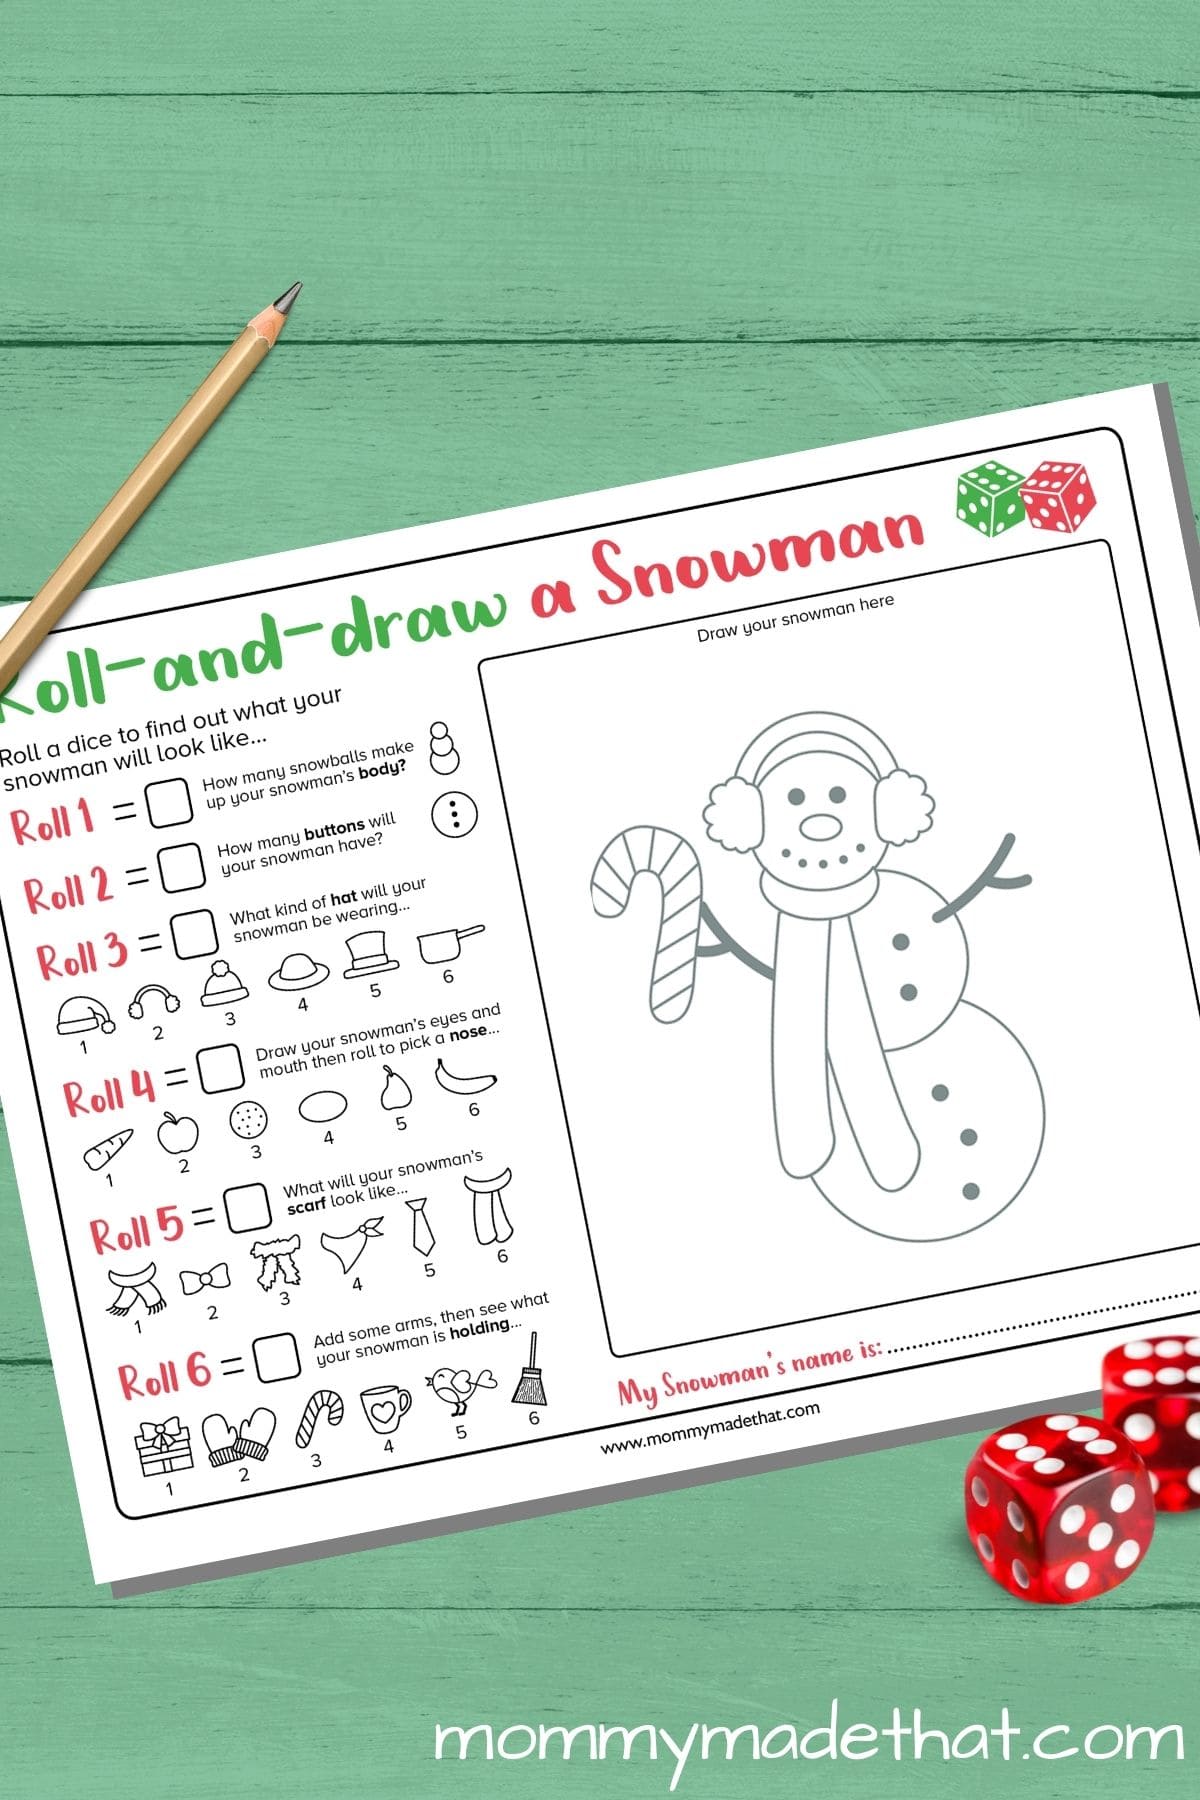 Roll a Snowman (Fun Free Printable Game)